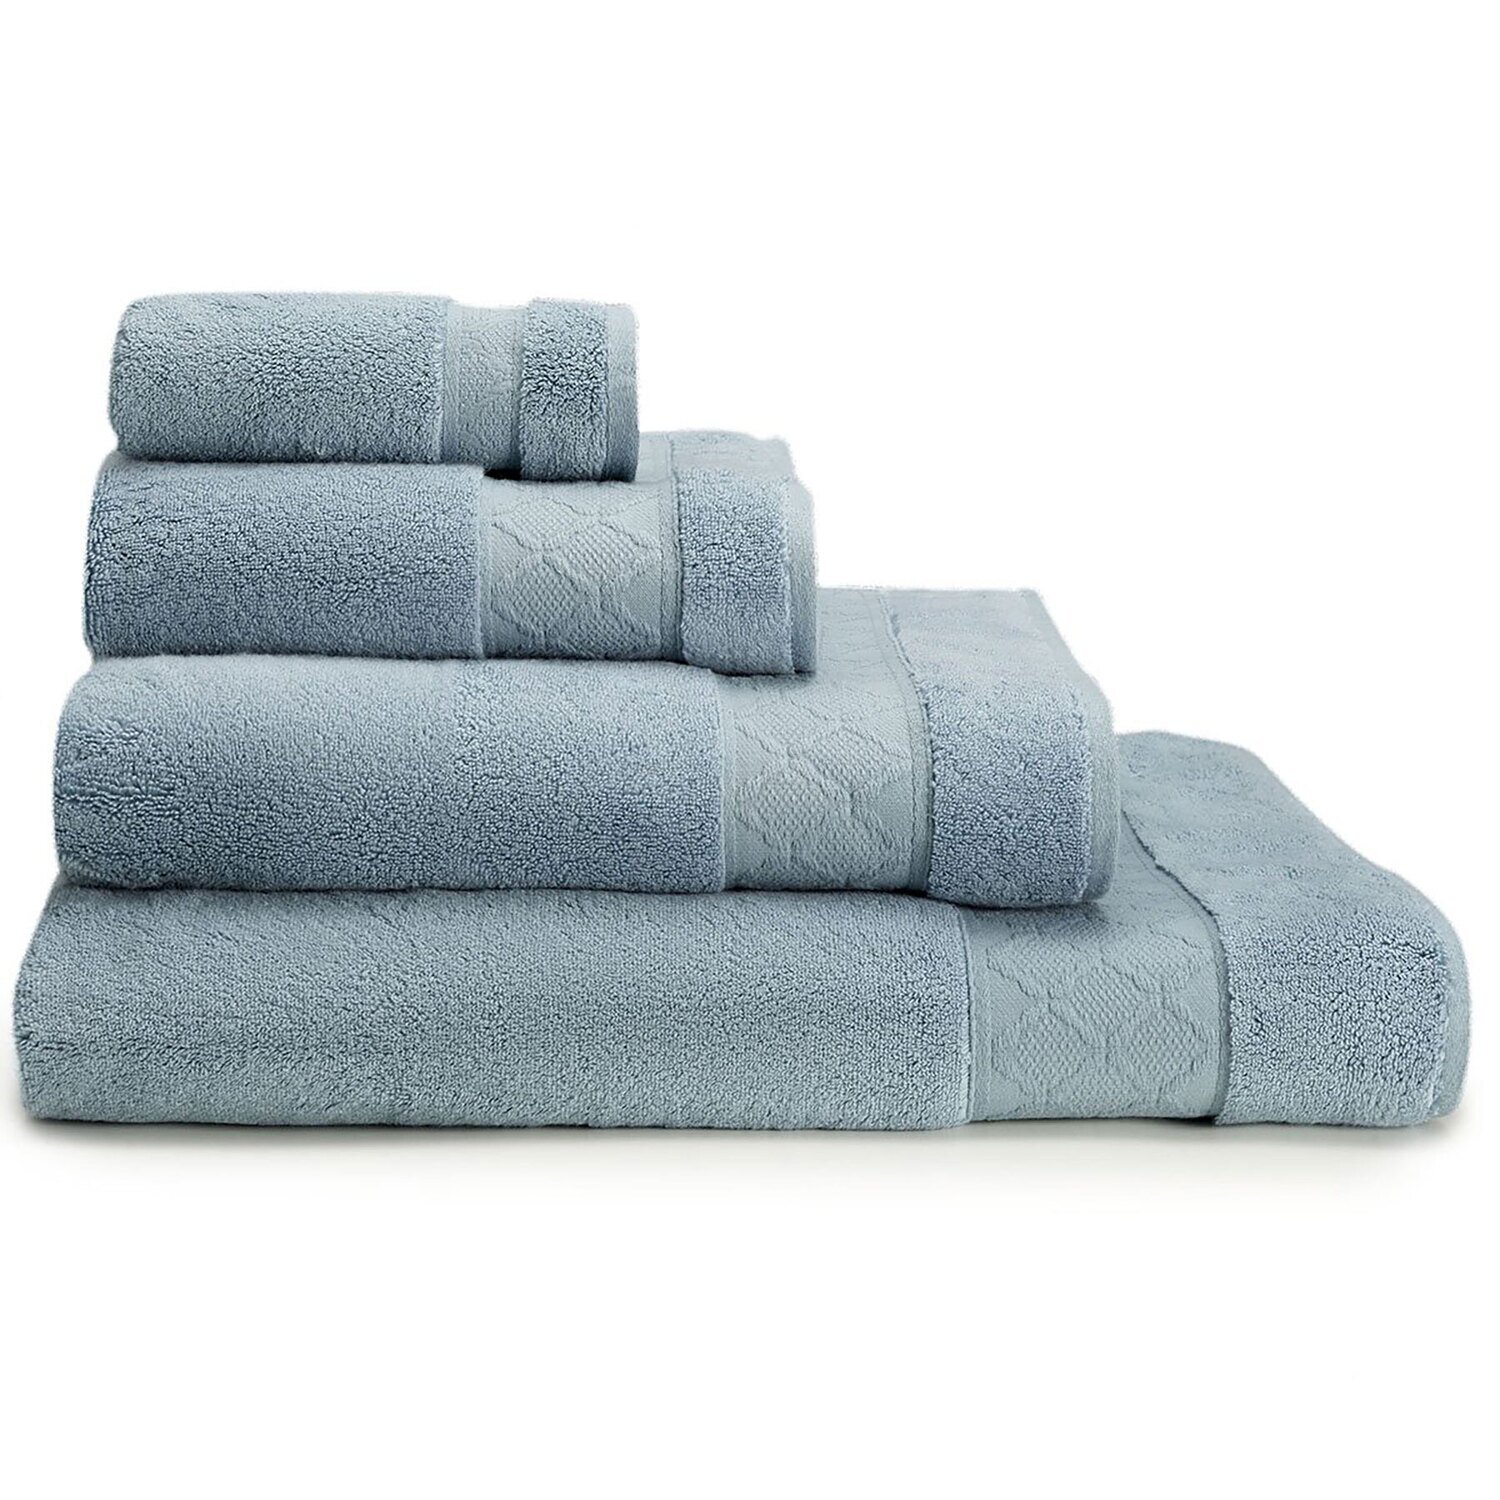 Le Jacquard Francais Hand Towel Caresse Blue Ice 50X100 100% Cotton 26891 Set of 4